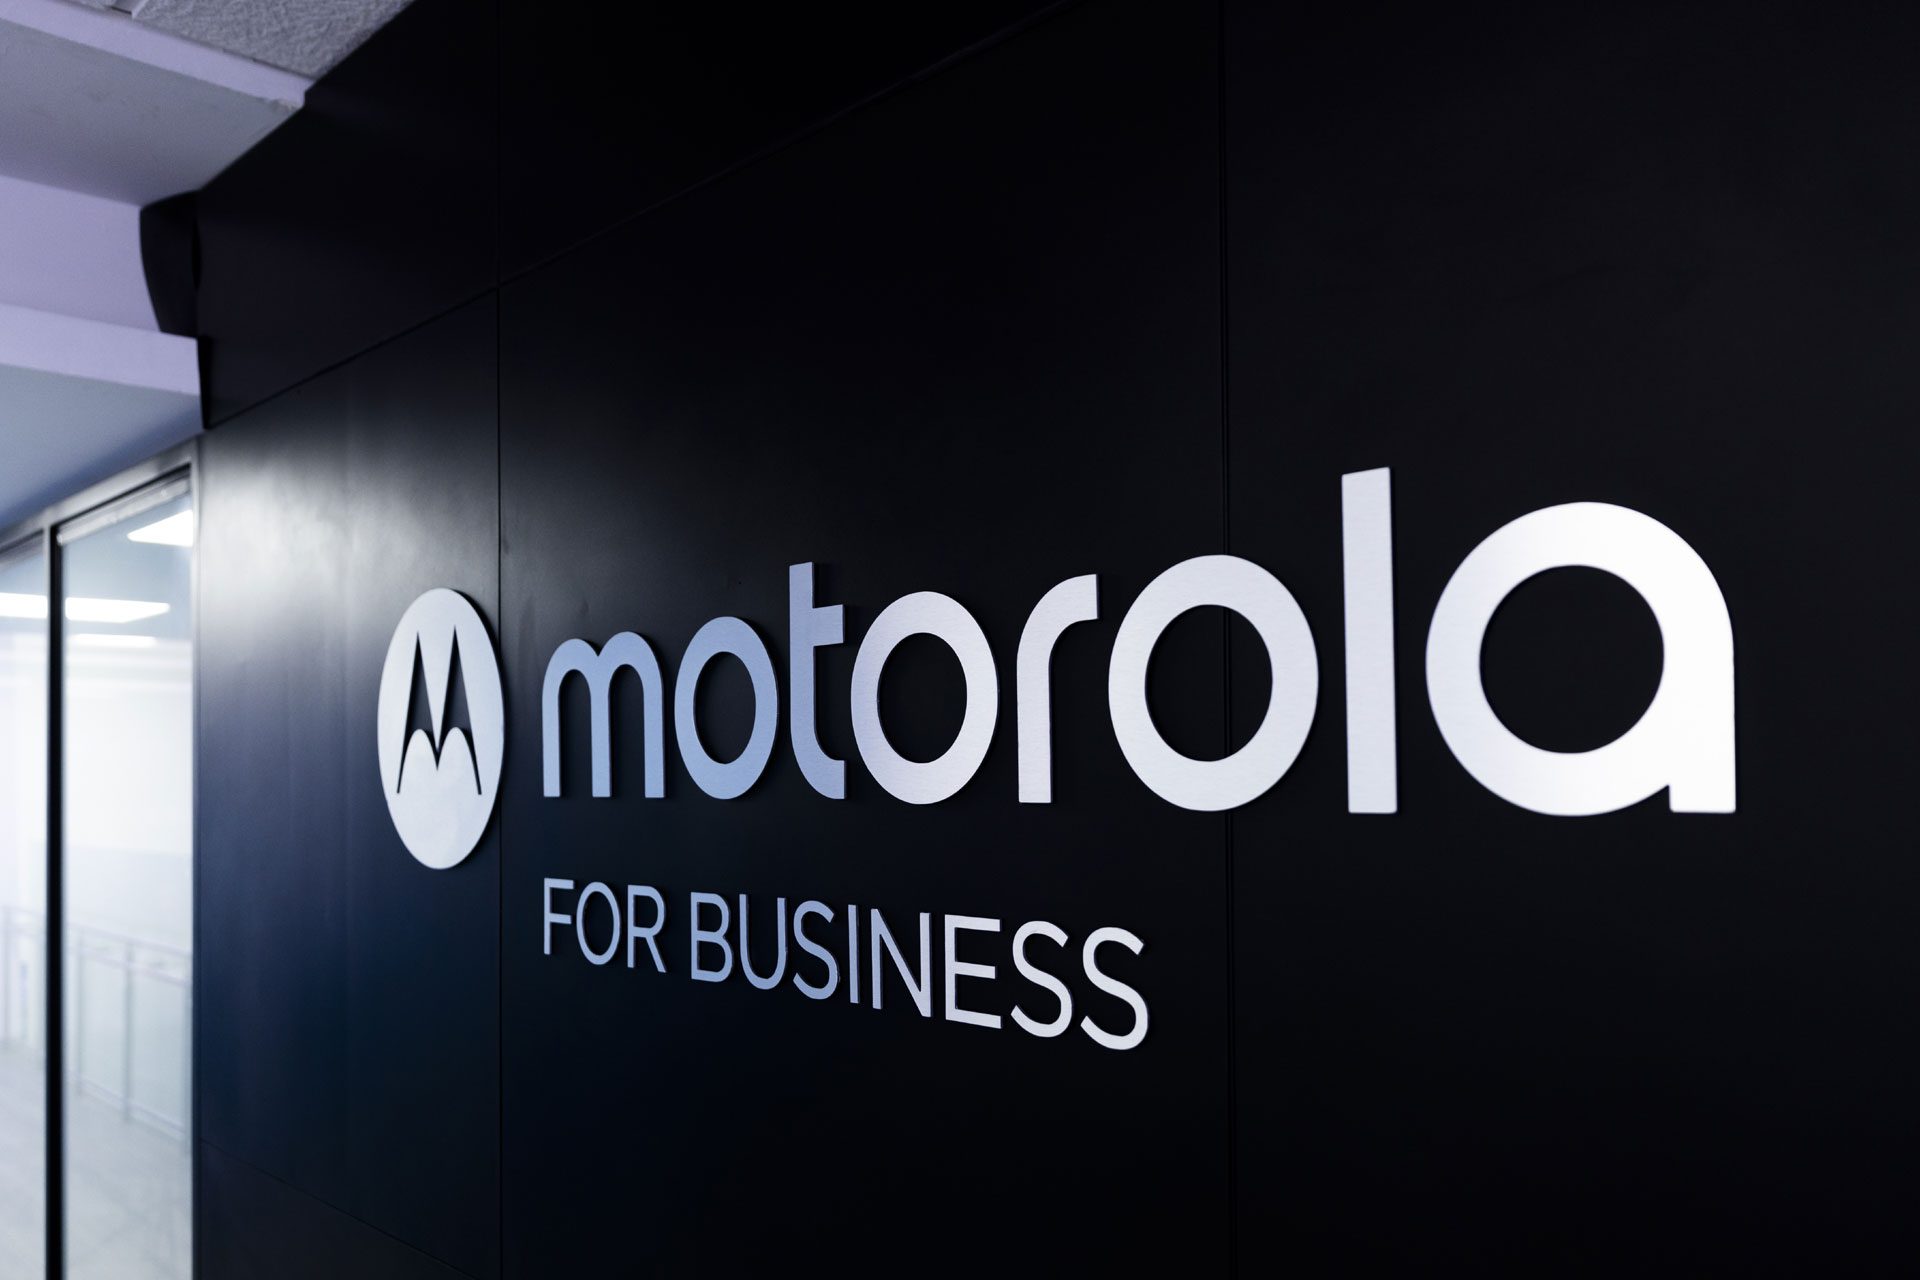 Centro de Motorola for Business